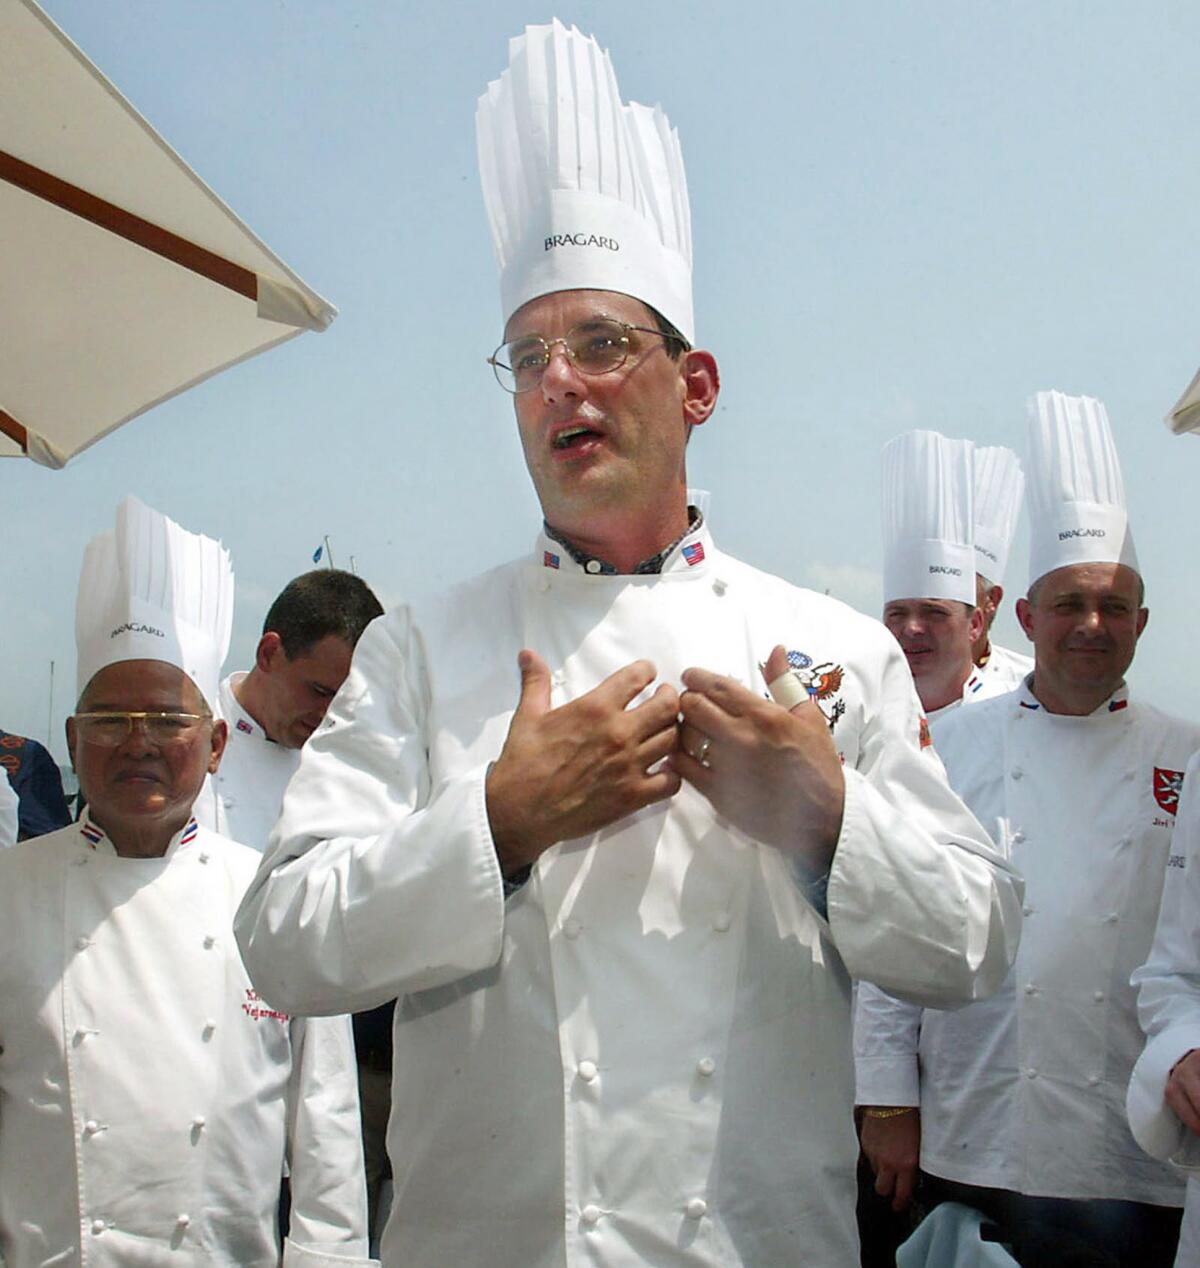 Fotografía de archivo del 27 de julio de 2004 del exchef de la Casa Blanca Walter Scheib mientras recibe a chefs de todo el mundo en el Museo Marítimo de la bahía de Chesapeake en St. Michaels, Maryland.